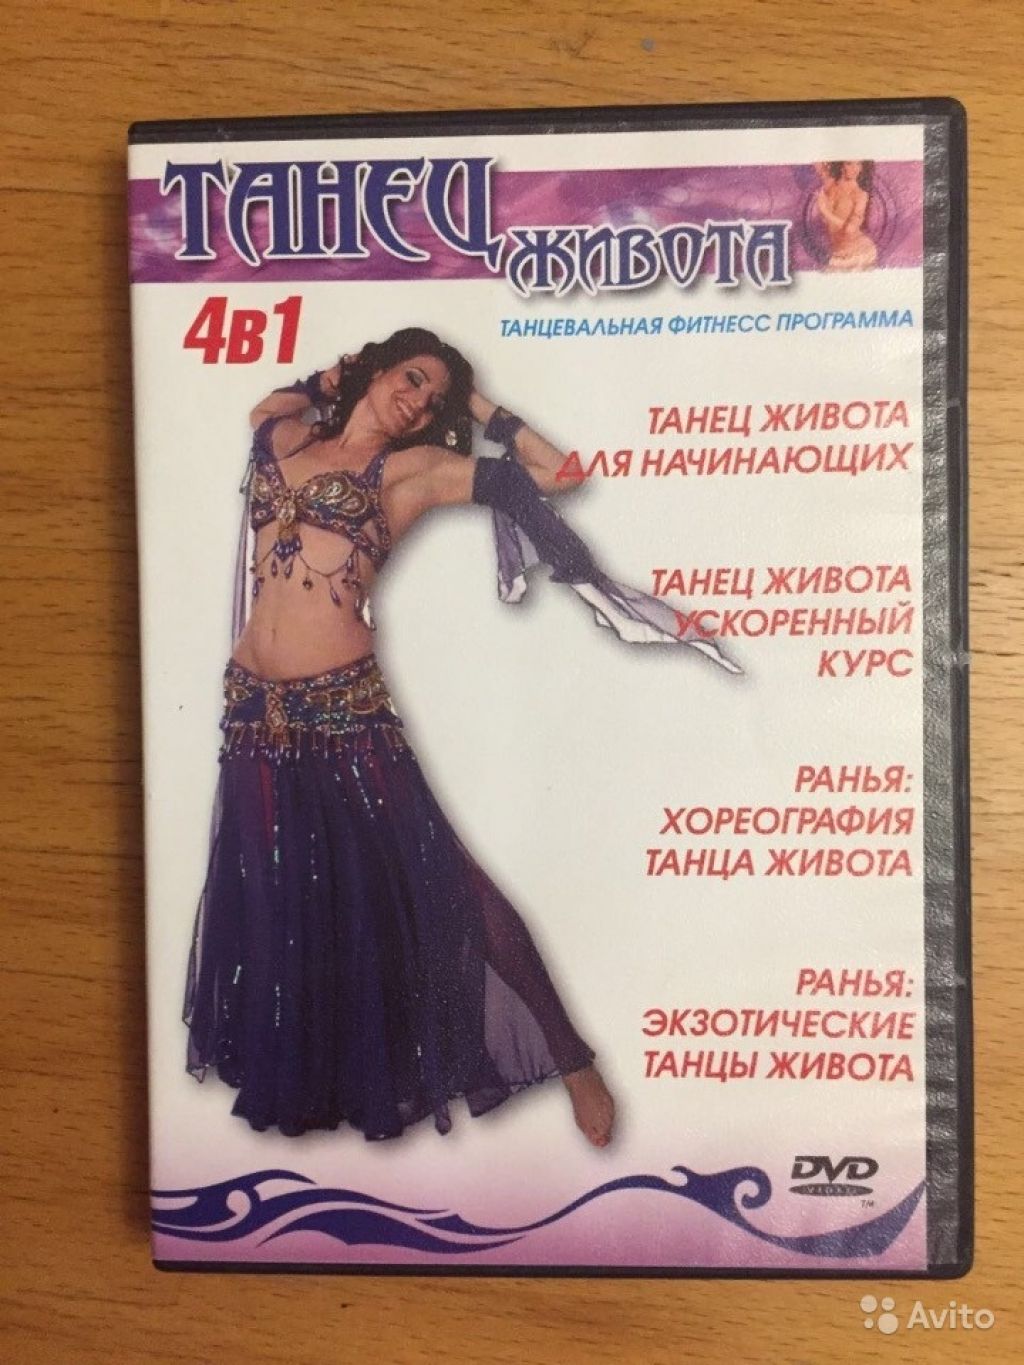 DVD диск (Танец живота) лицензионный в Москве. Фото 1